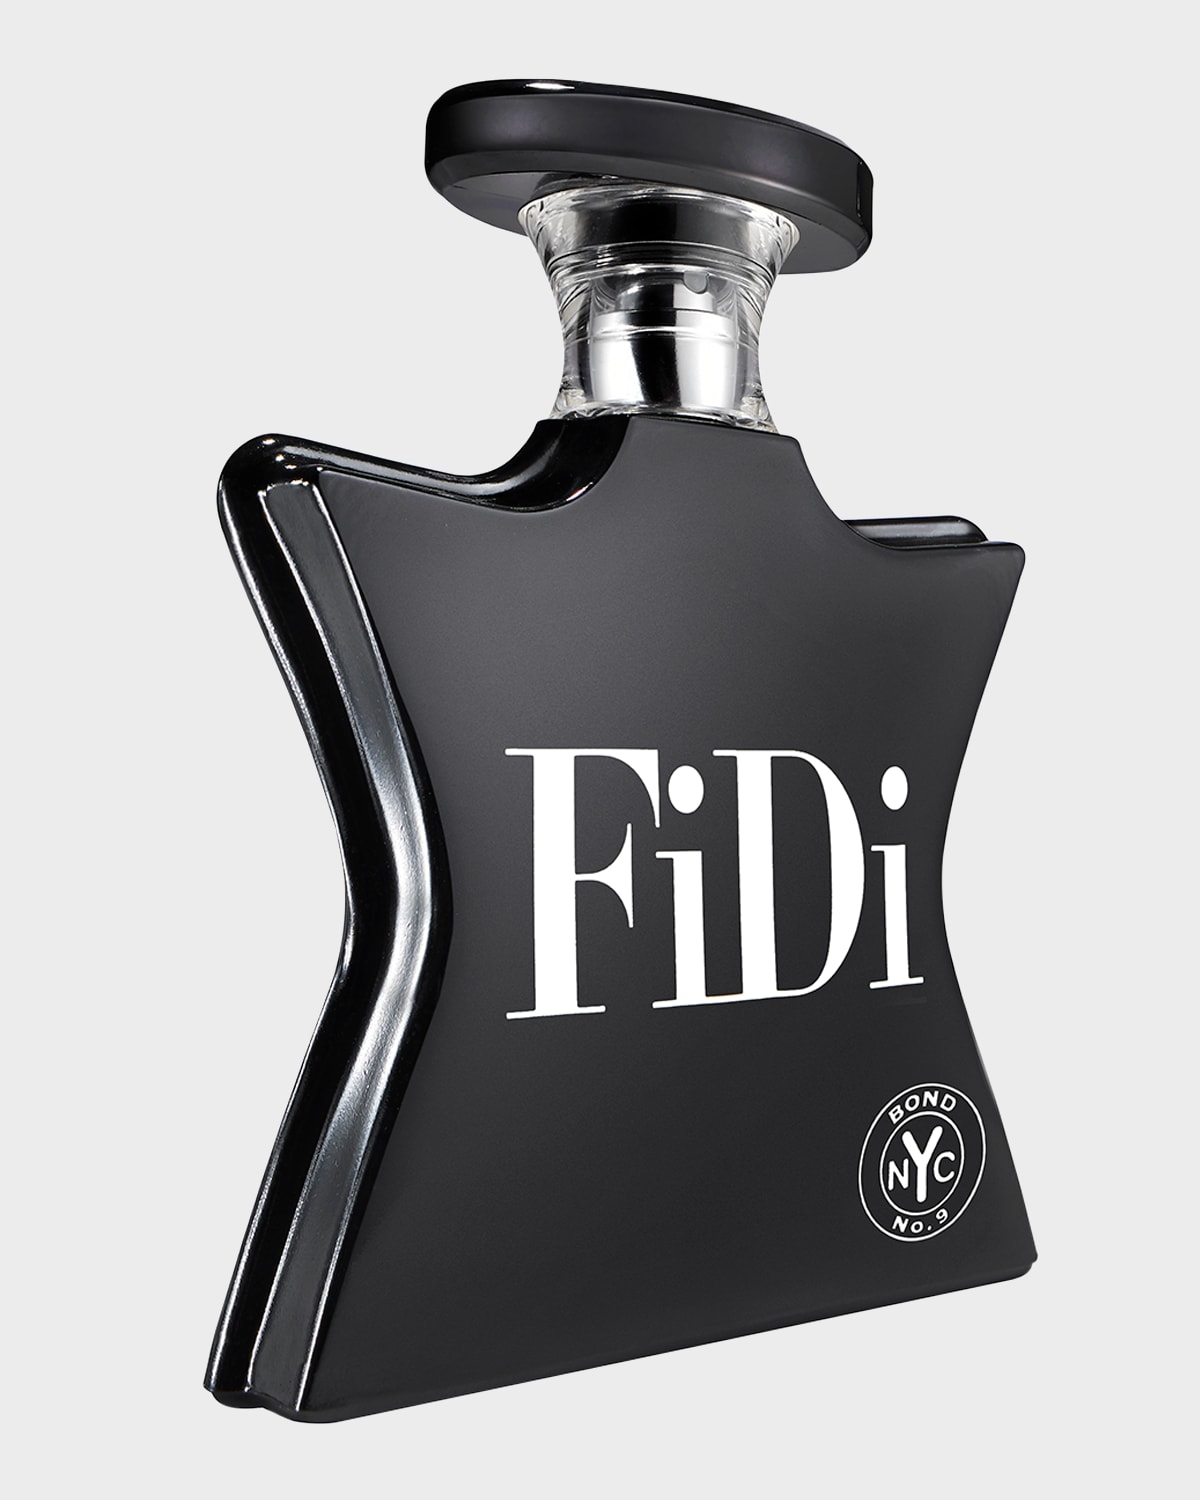 Bond No.9 New York FiDi Eau de Parfum, 3.4 oz.